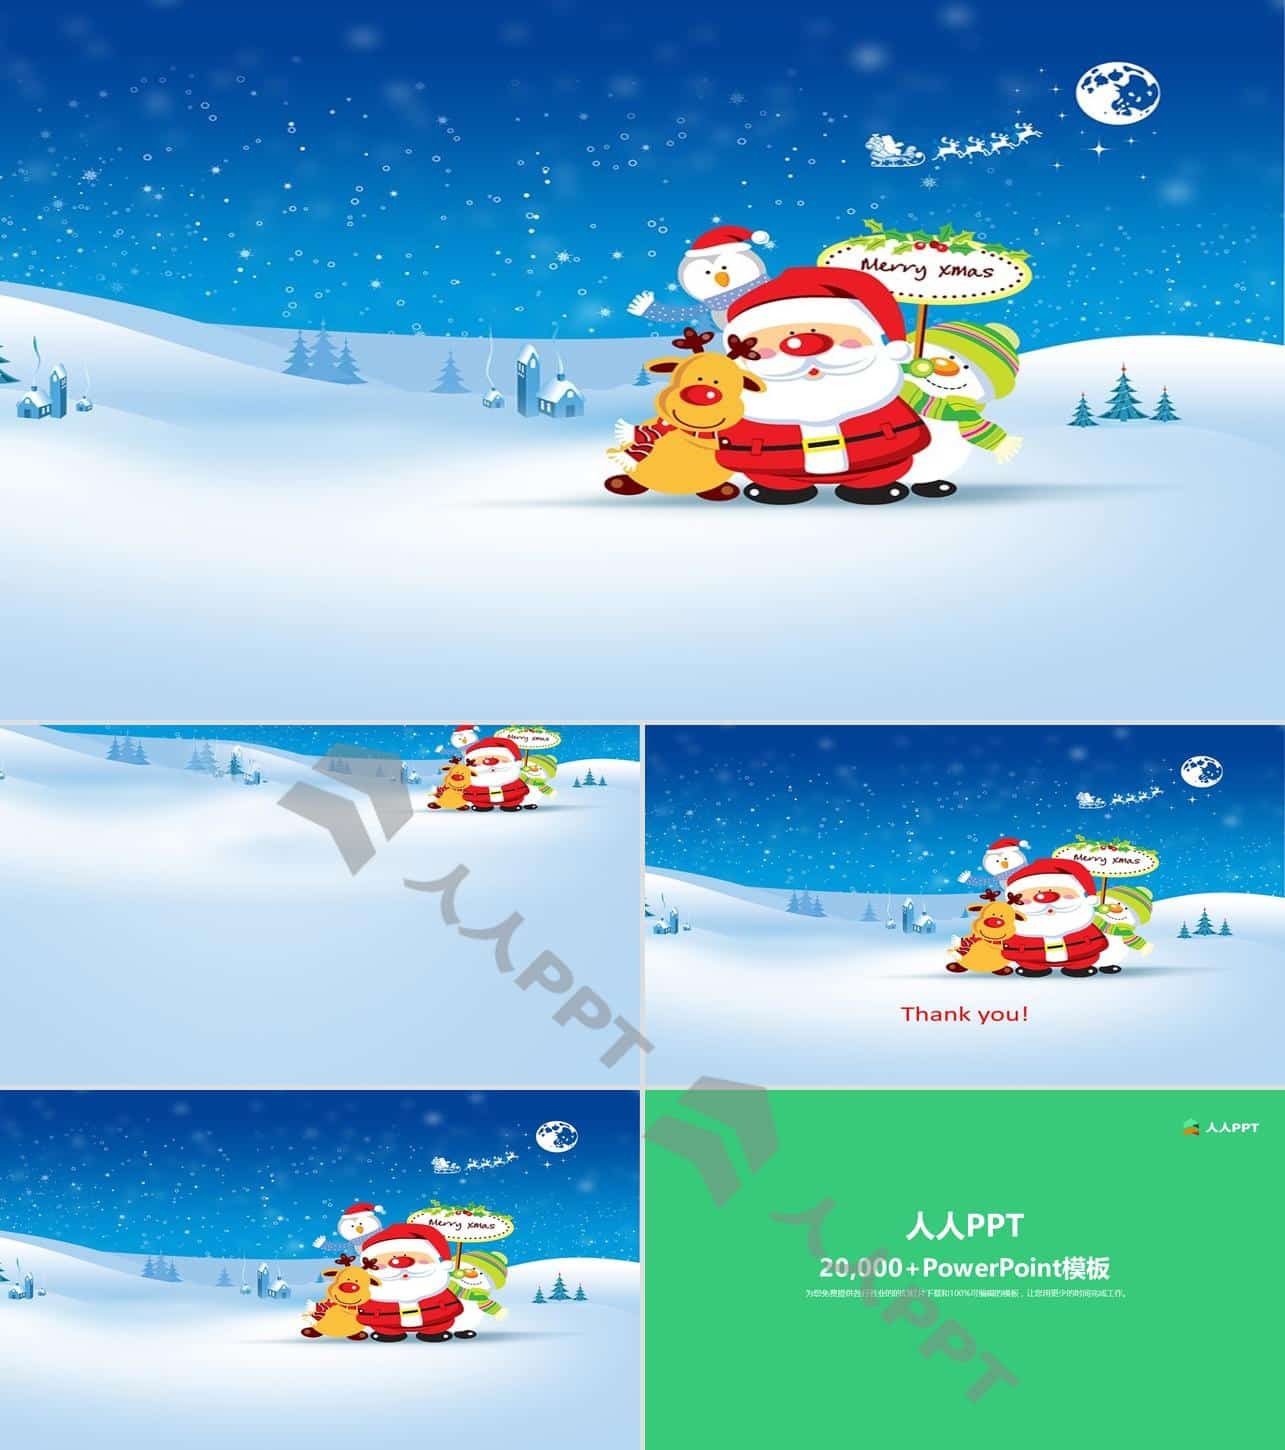 卡通圣诞老人 驯鹿 雪人――唯美矢量雪景蓝色圣诞节PPT模板长图